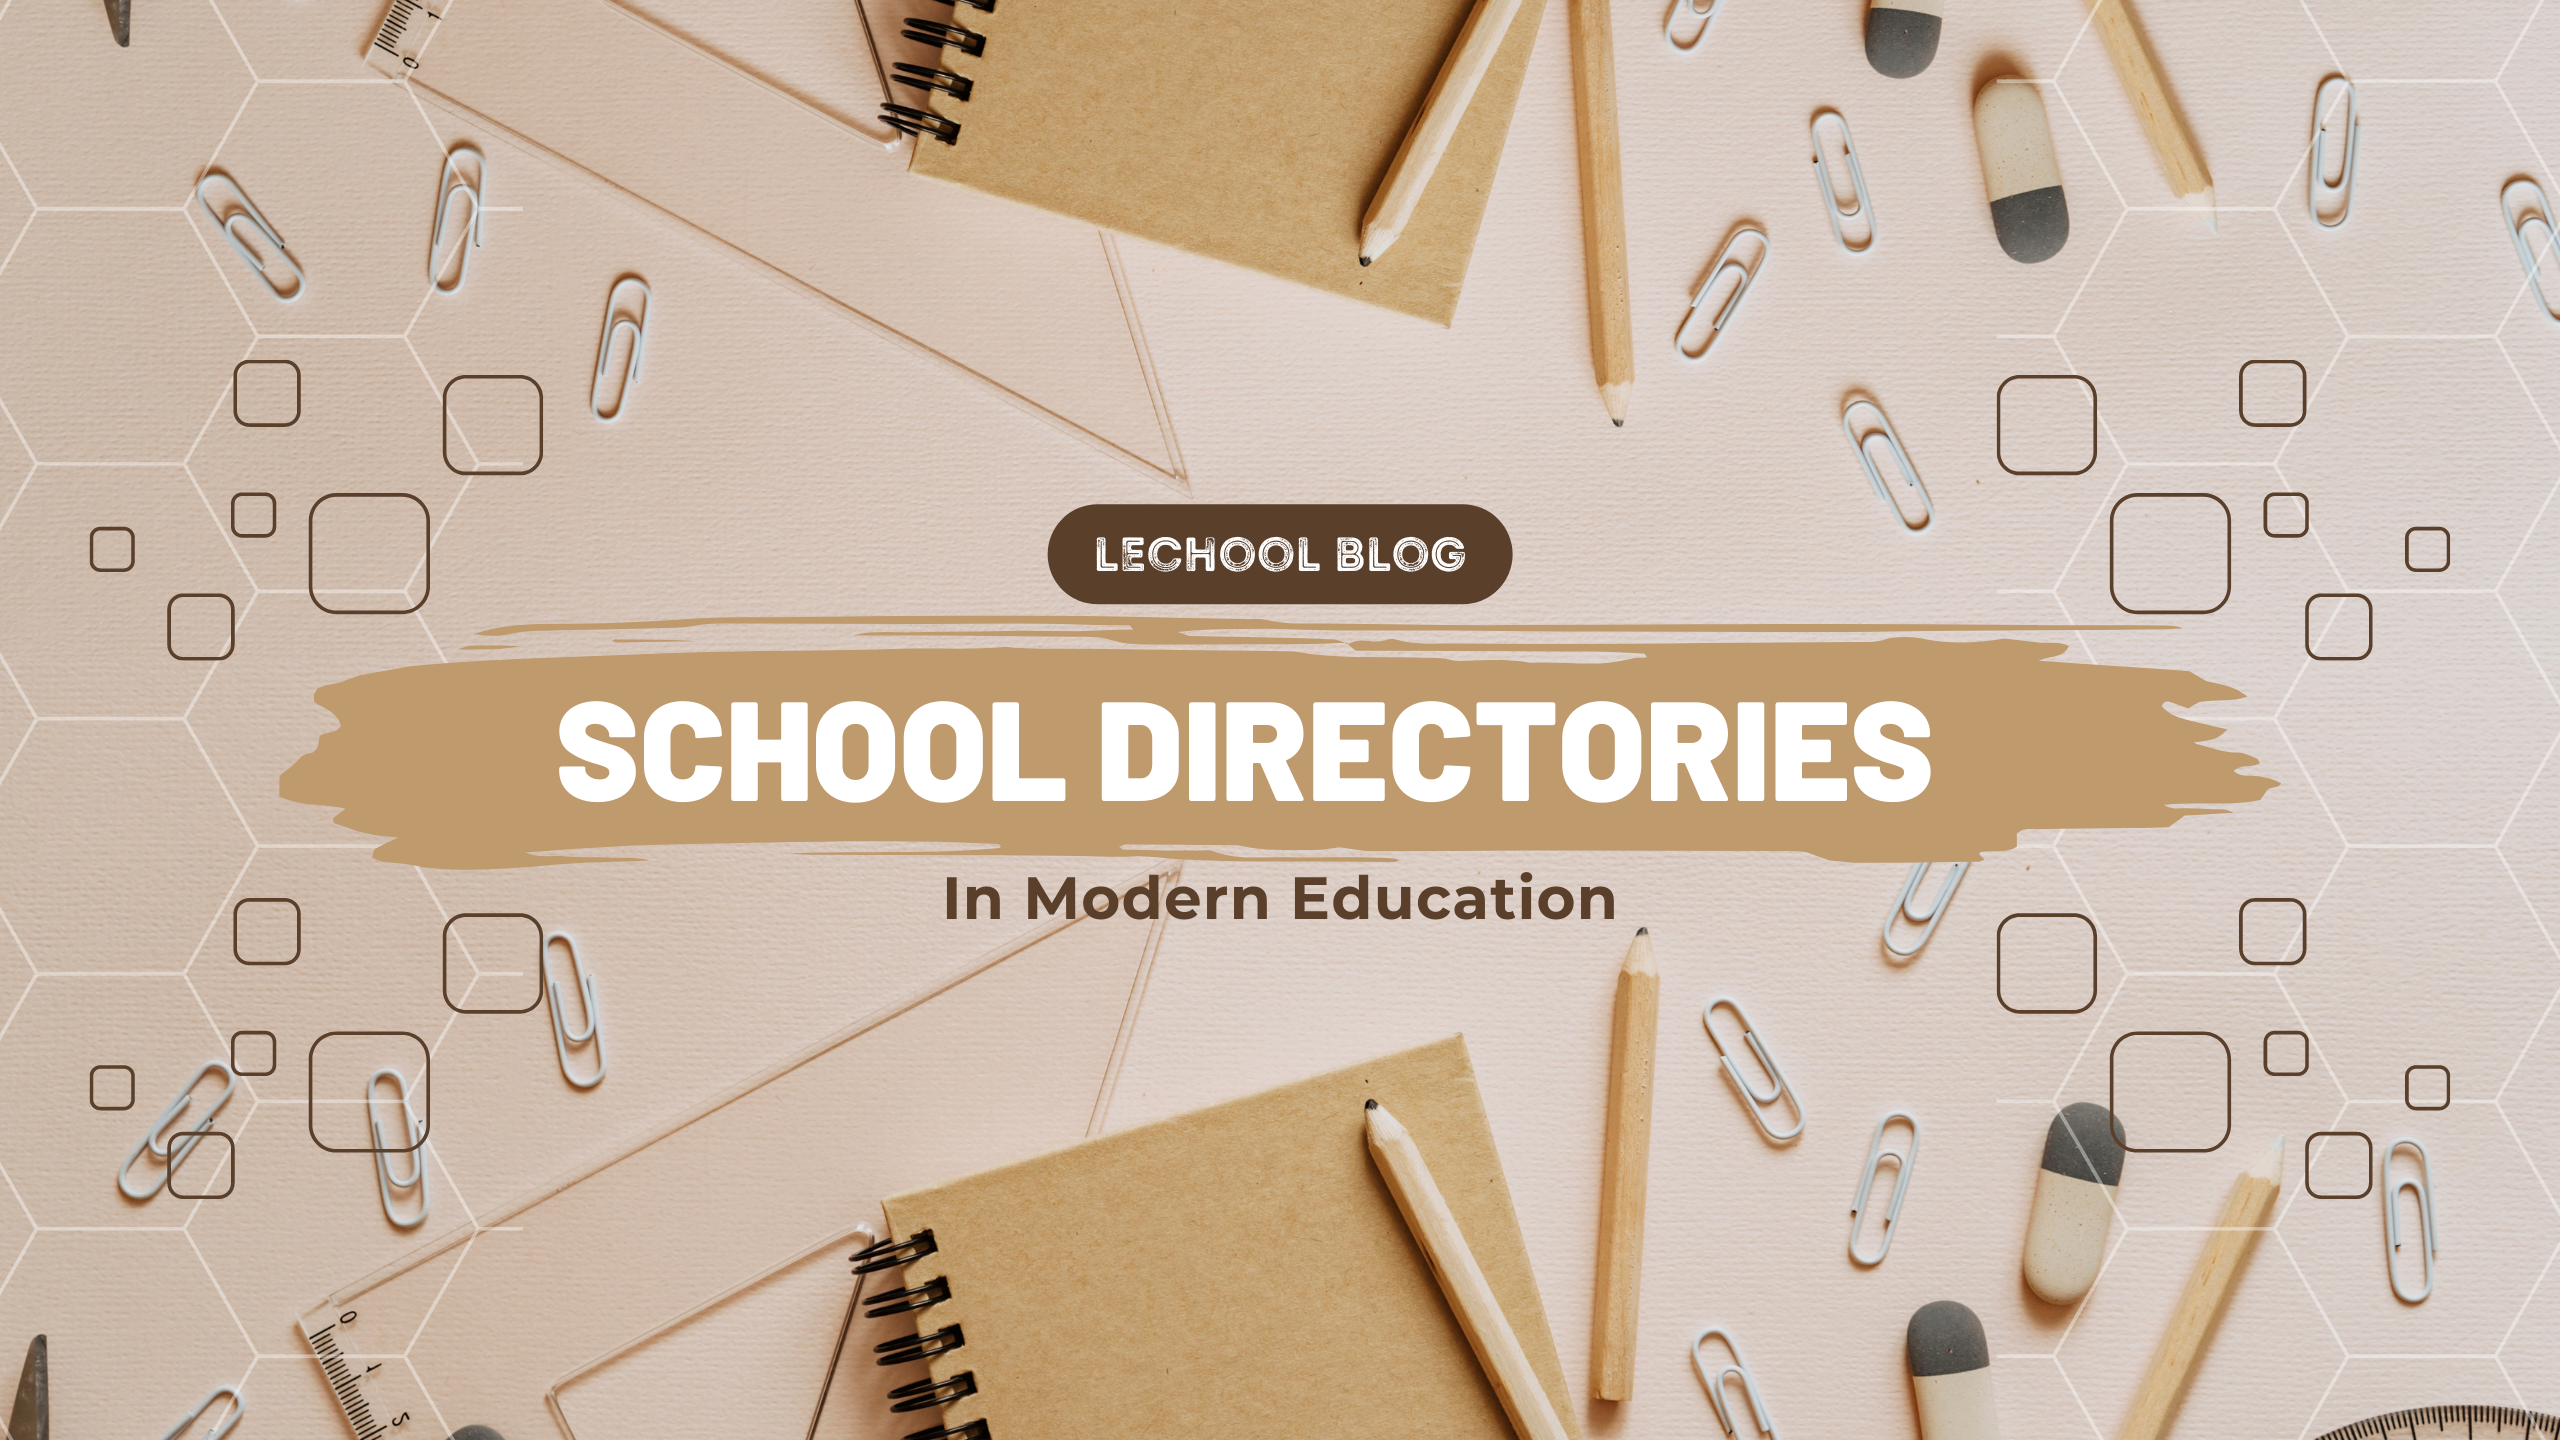 schools directories